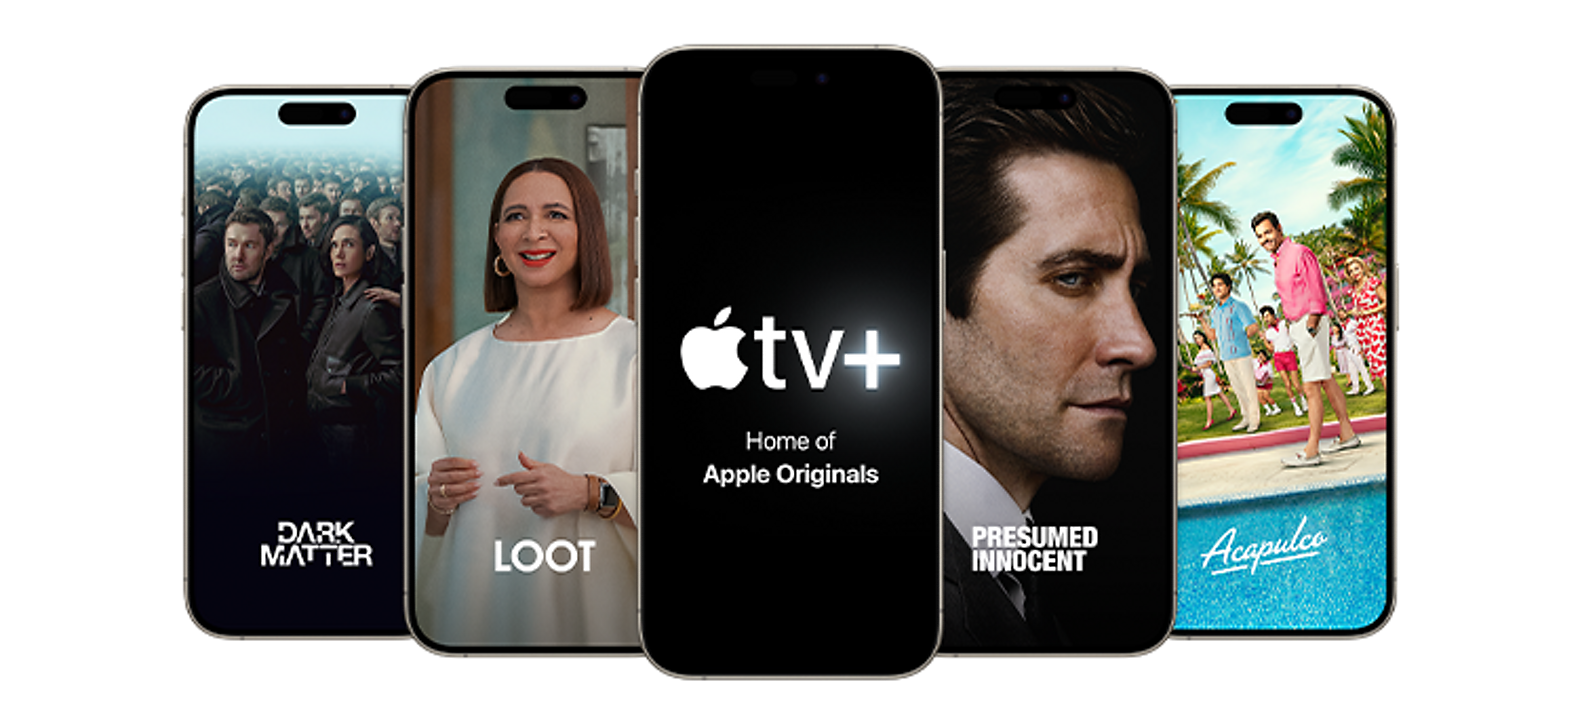 Programas de TV y películas en Apple TV Plus, como Dark Matter, Loot, Acapulco y Presumed Innocent.